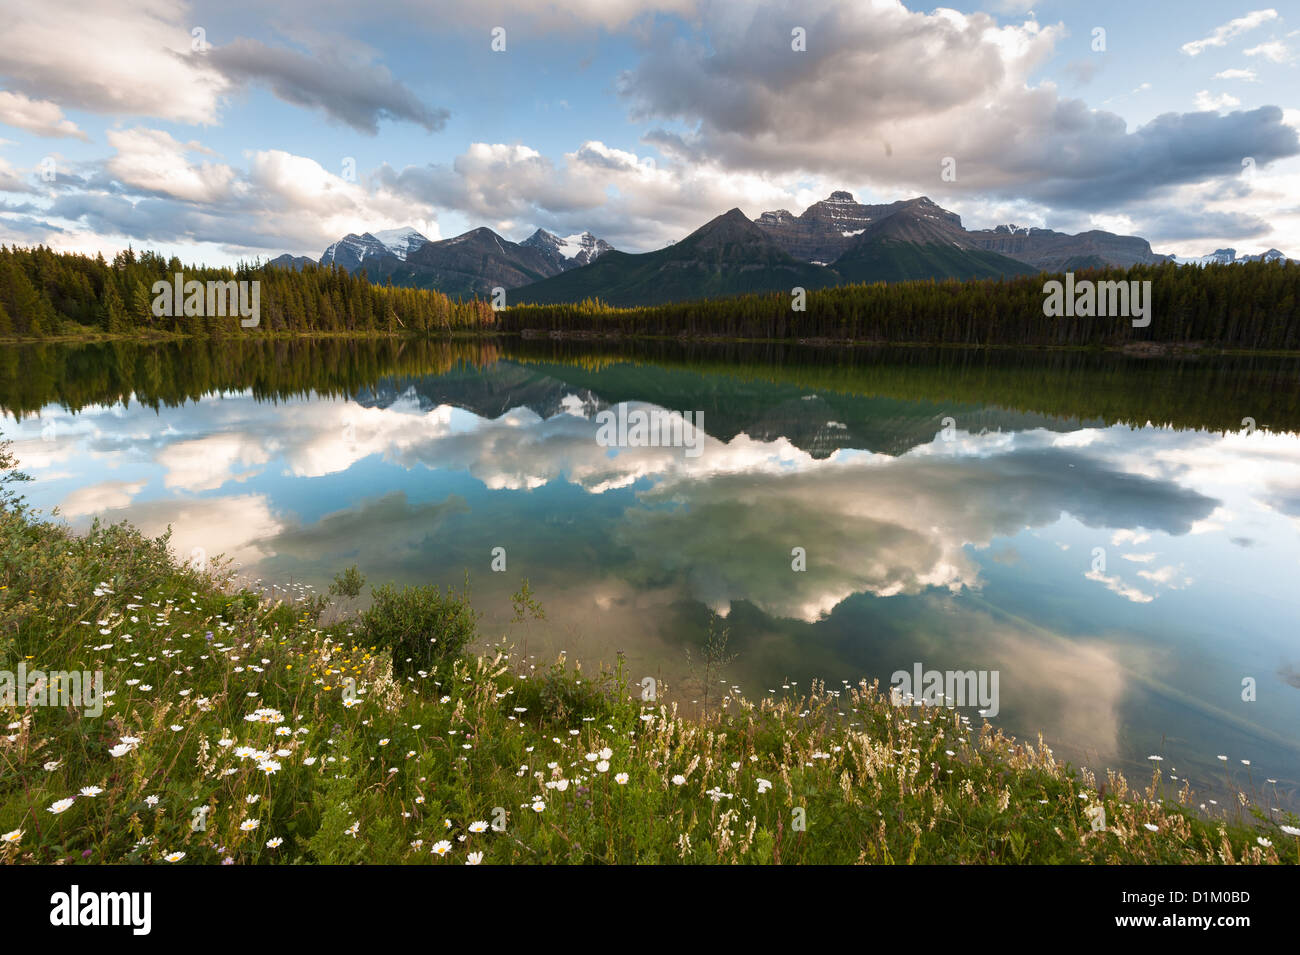 Herbert panorama du lac, dans le parc national Banff, Alberta, Canada Banque D'Images